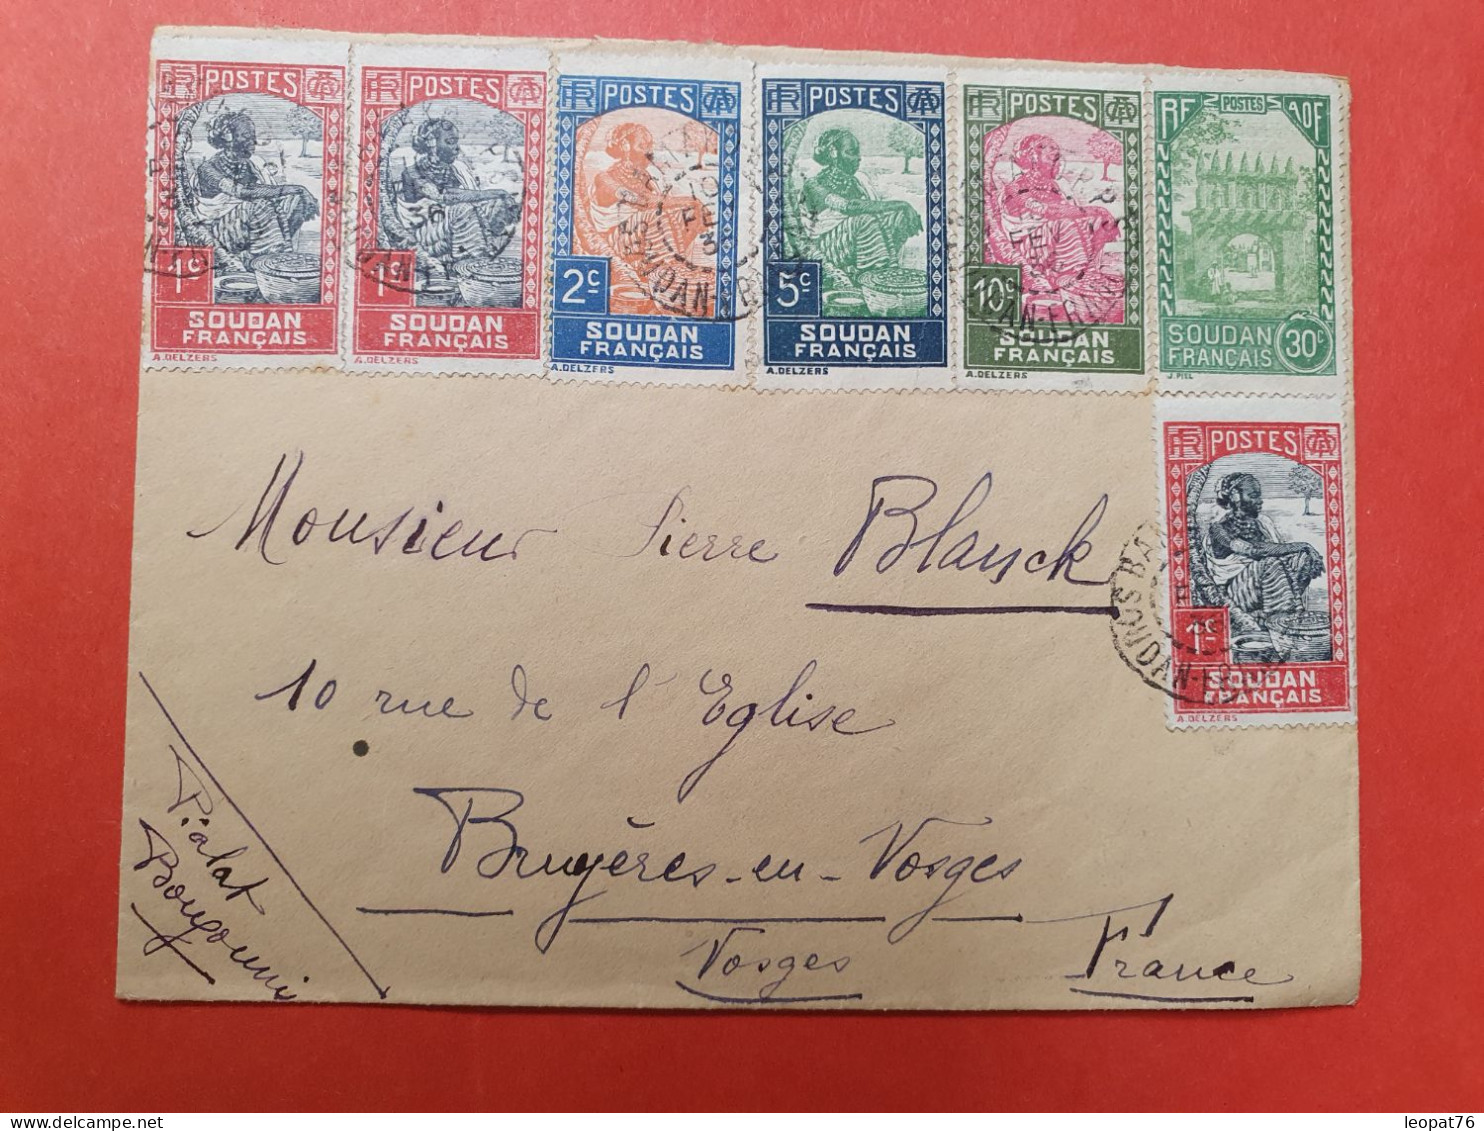 Soudan - Enveloppe De Bamako Pour La France En 1936, Affranchissement Varié  - D 14 - Briefe U. Dokumente